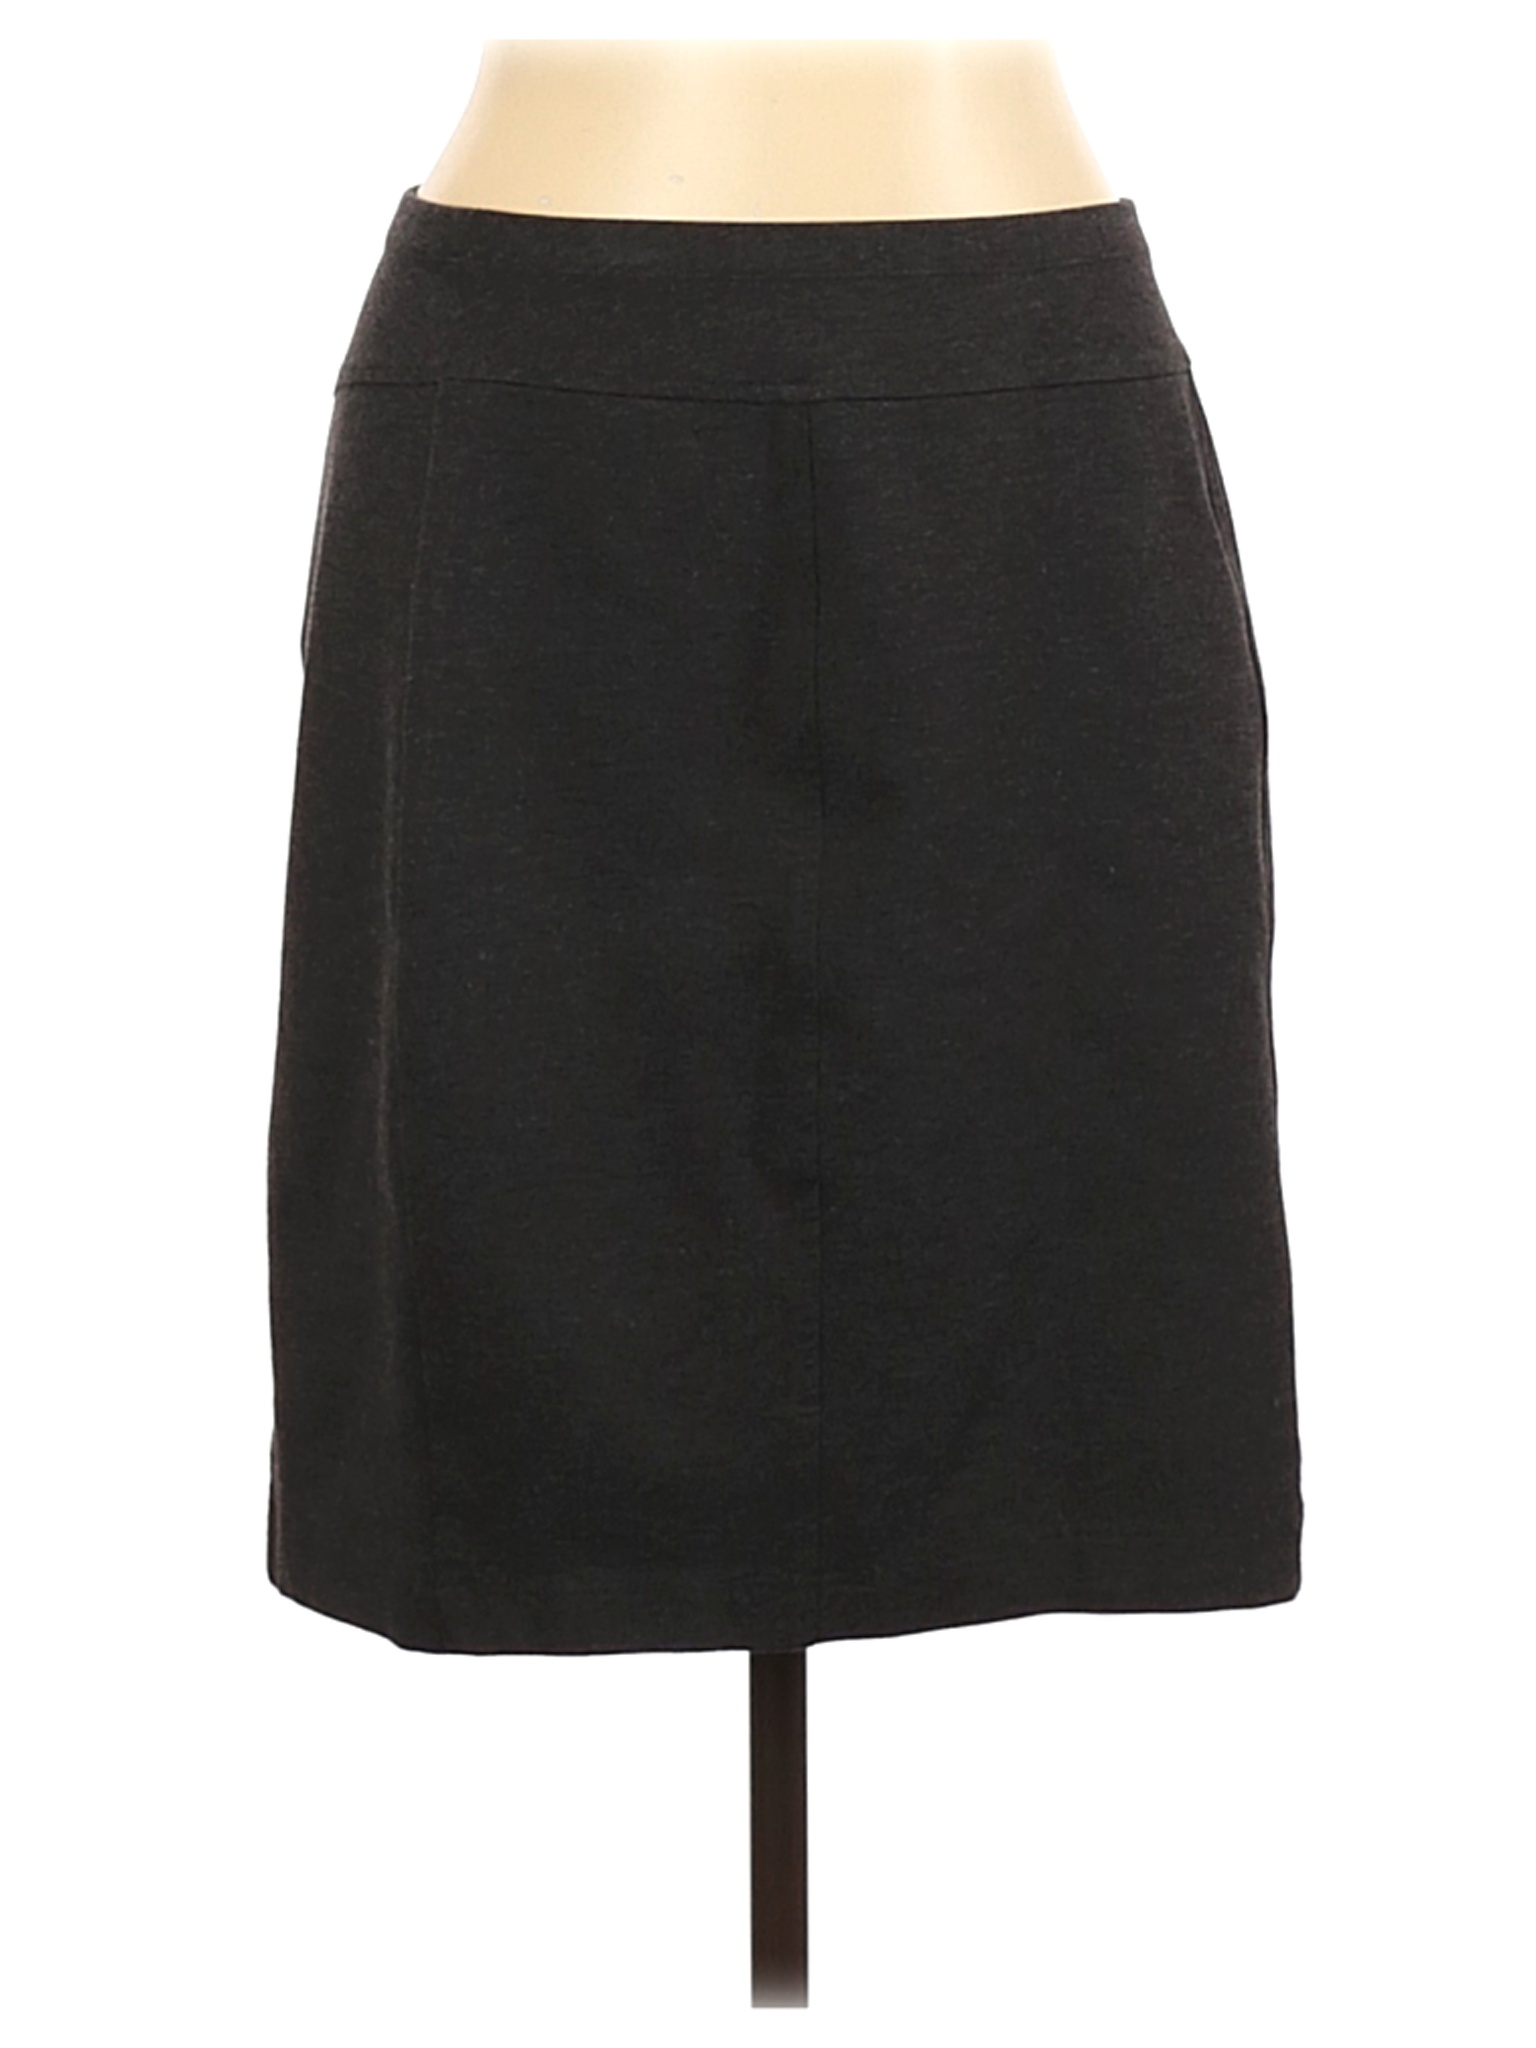 Ellen Tracy Women Black Casual Skirt L | eBay